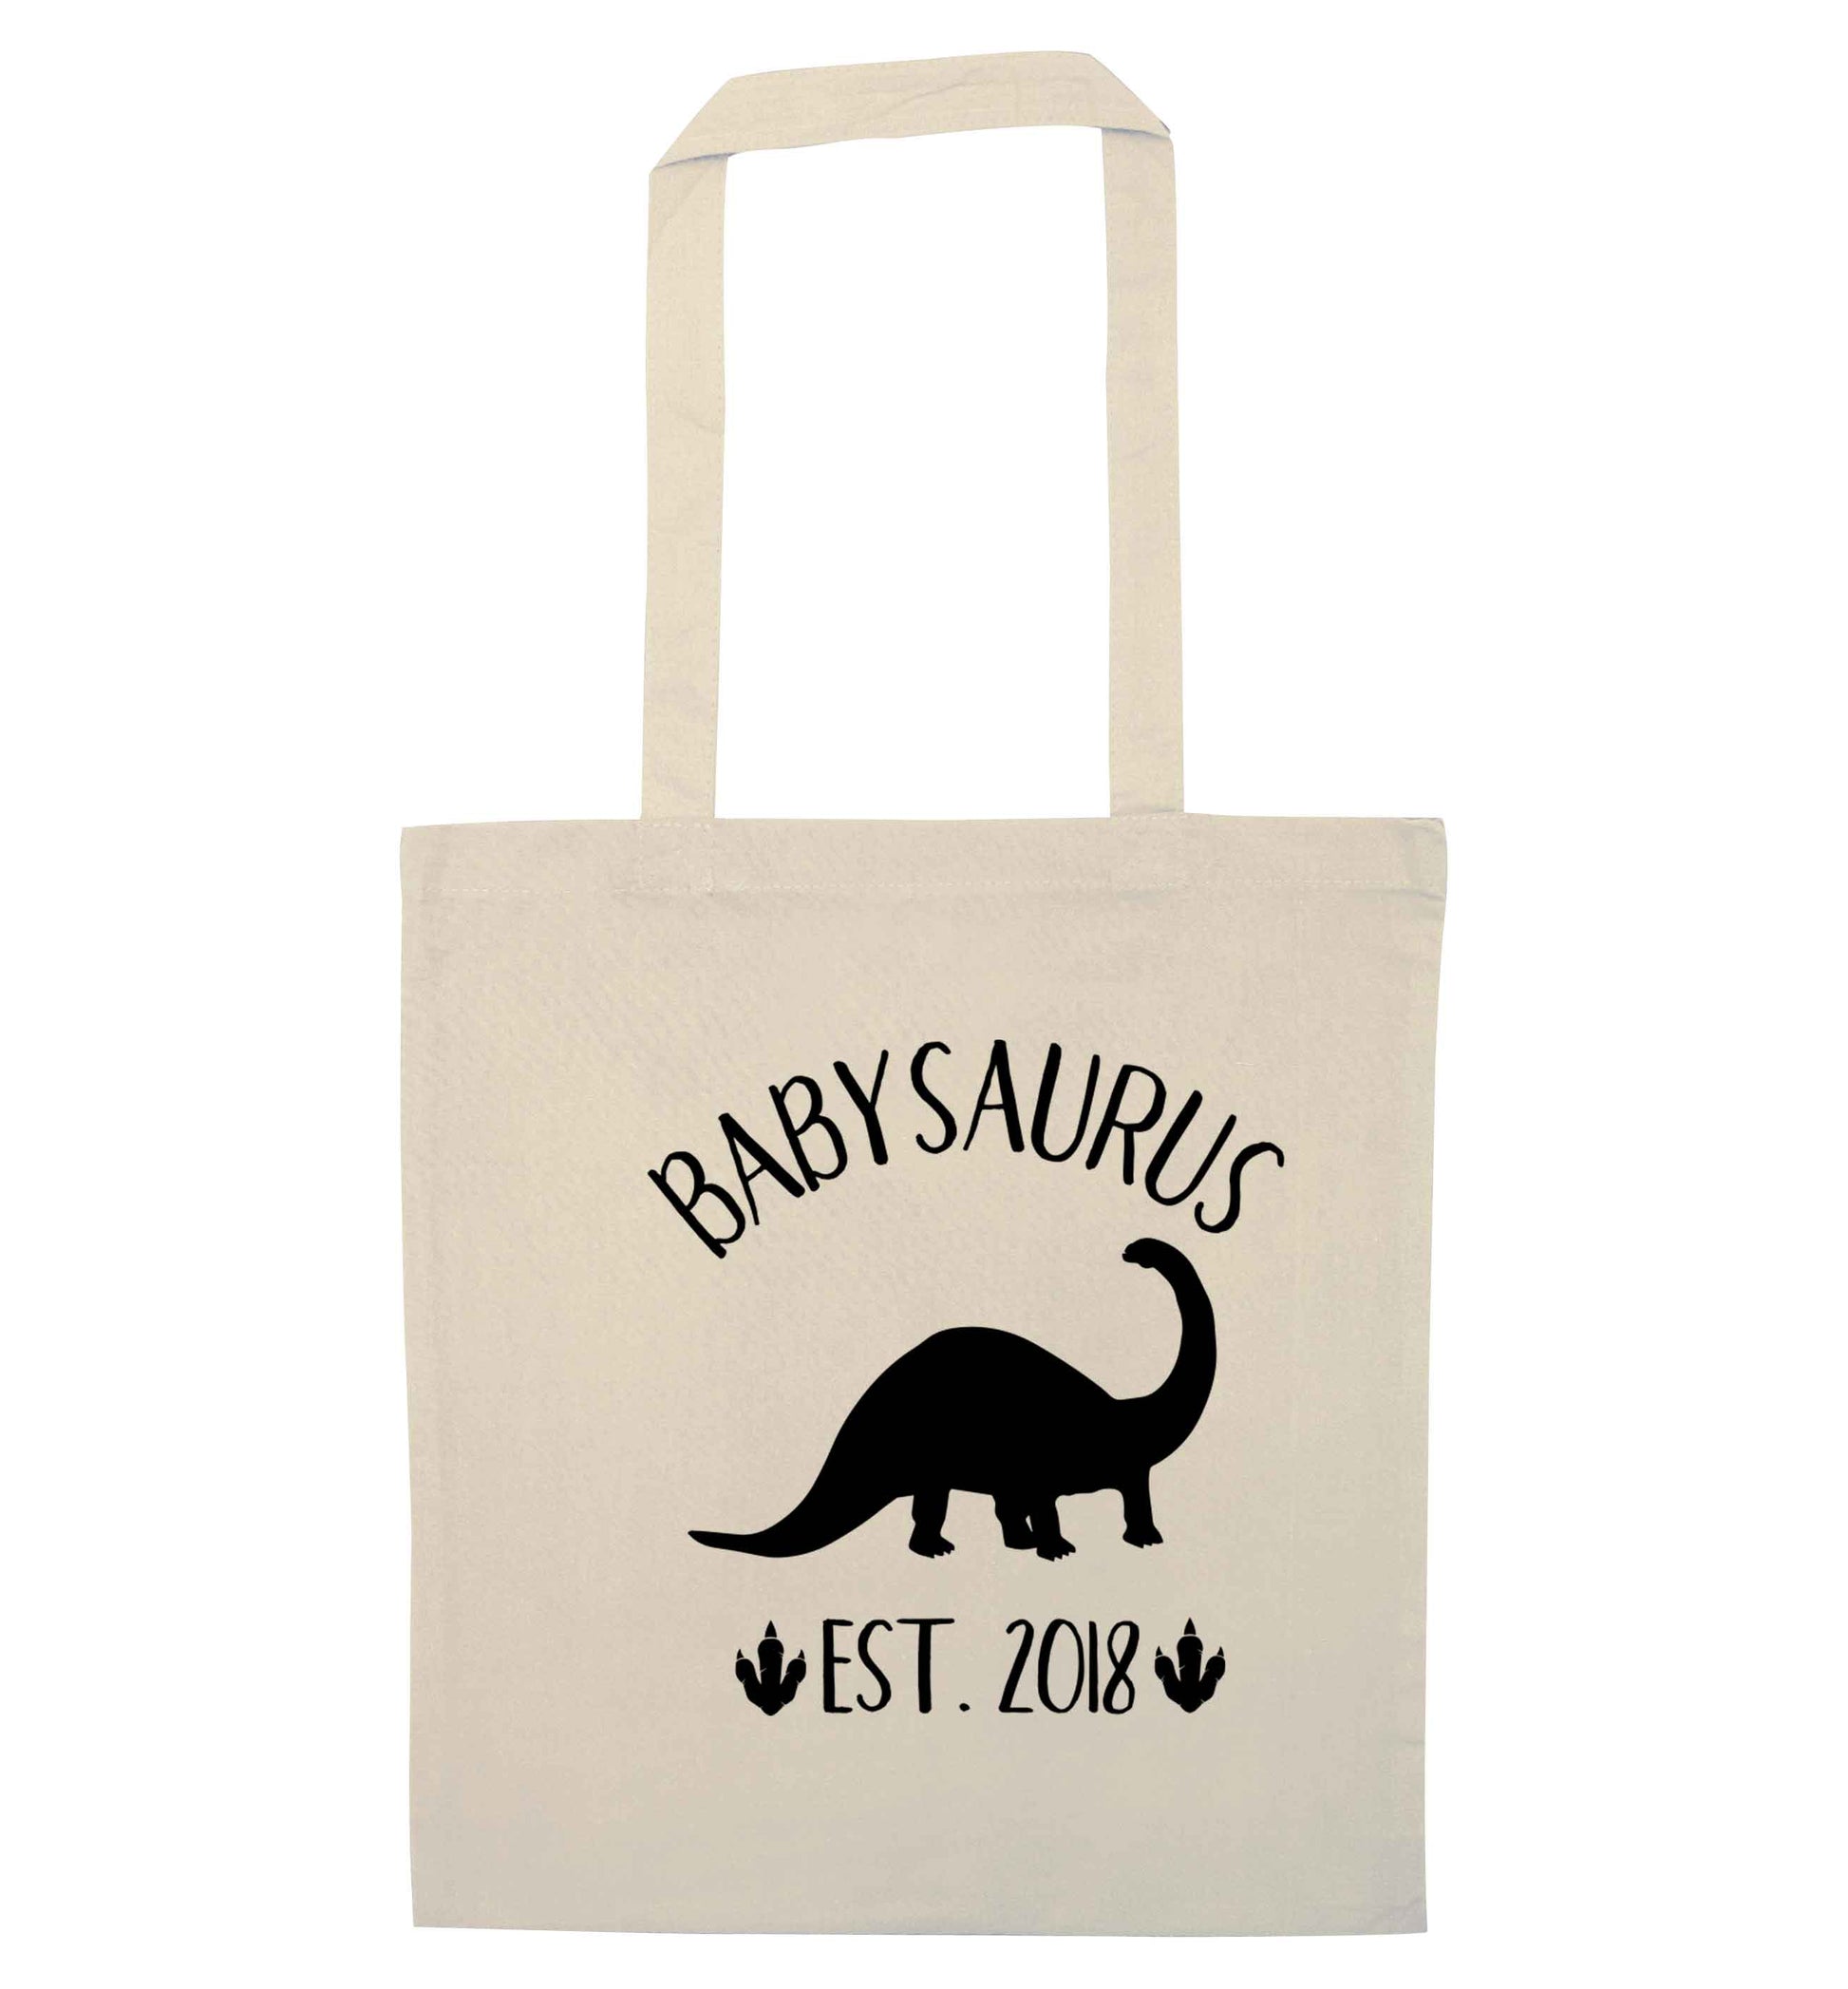 Personalised babysaurus since (custom date) natural tote bag